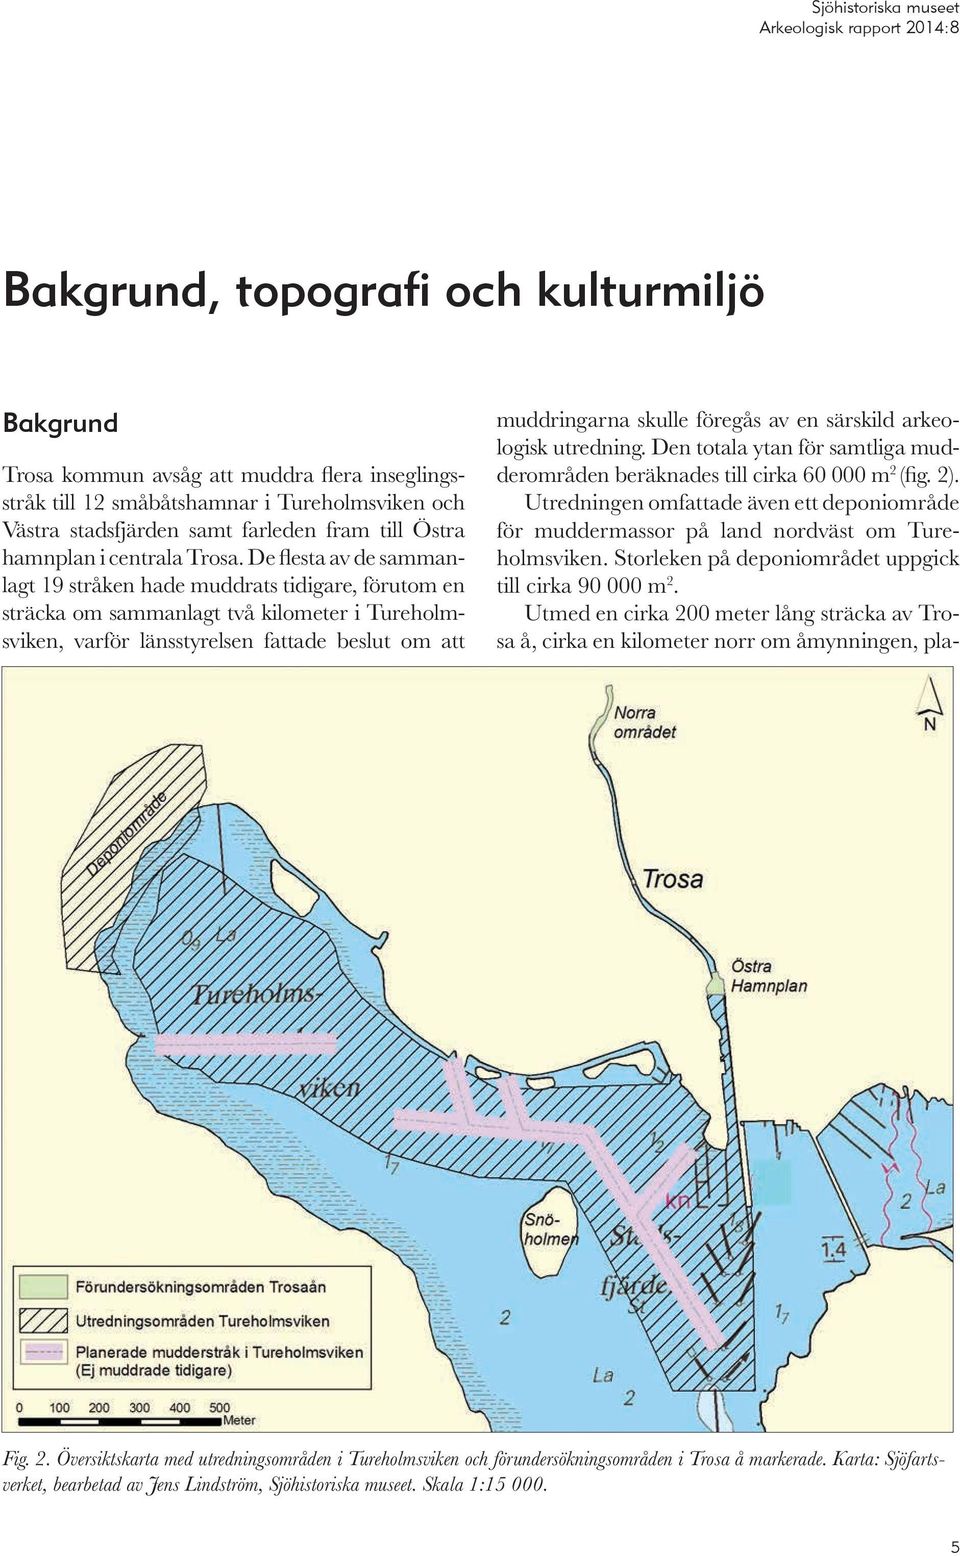 De flesta av de sammanlagt 19 stråken hade muddrats tidigare, förutom en sträcka om sammanlagt två kilometer i Tureholmsviken, varför länsstyrelsen fattade beslut om att muddringarna skulle föregås